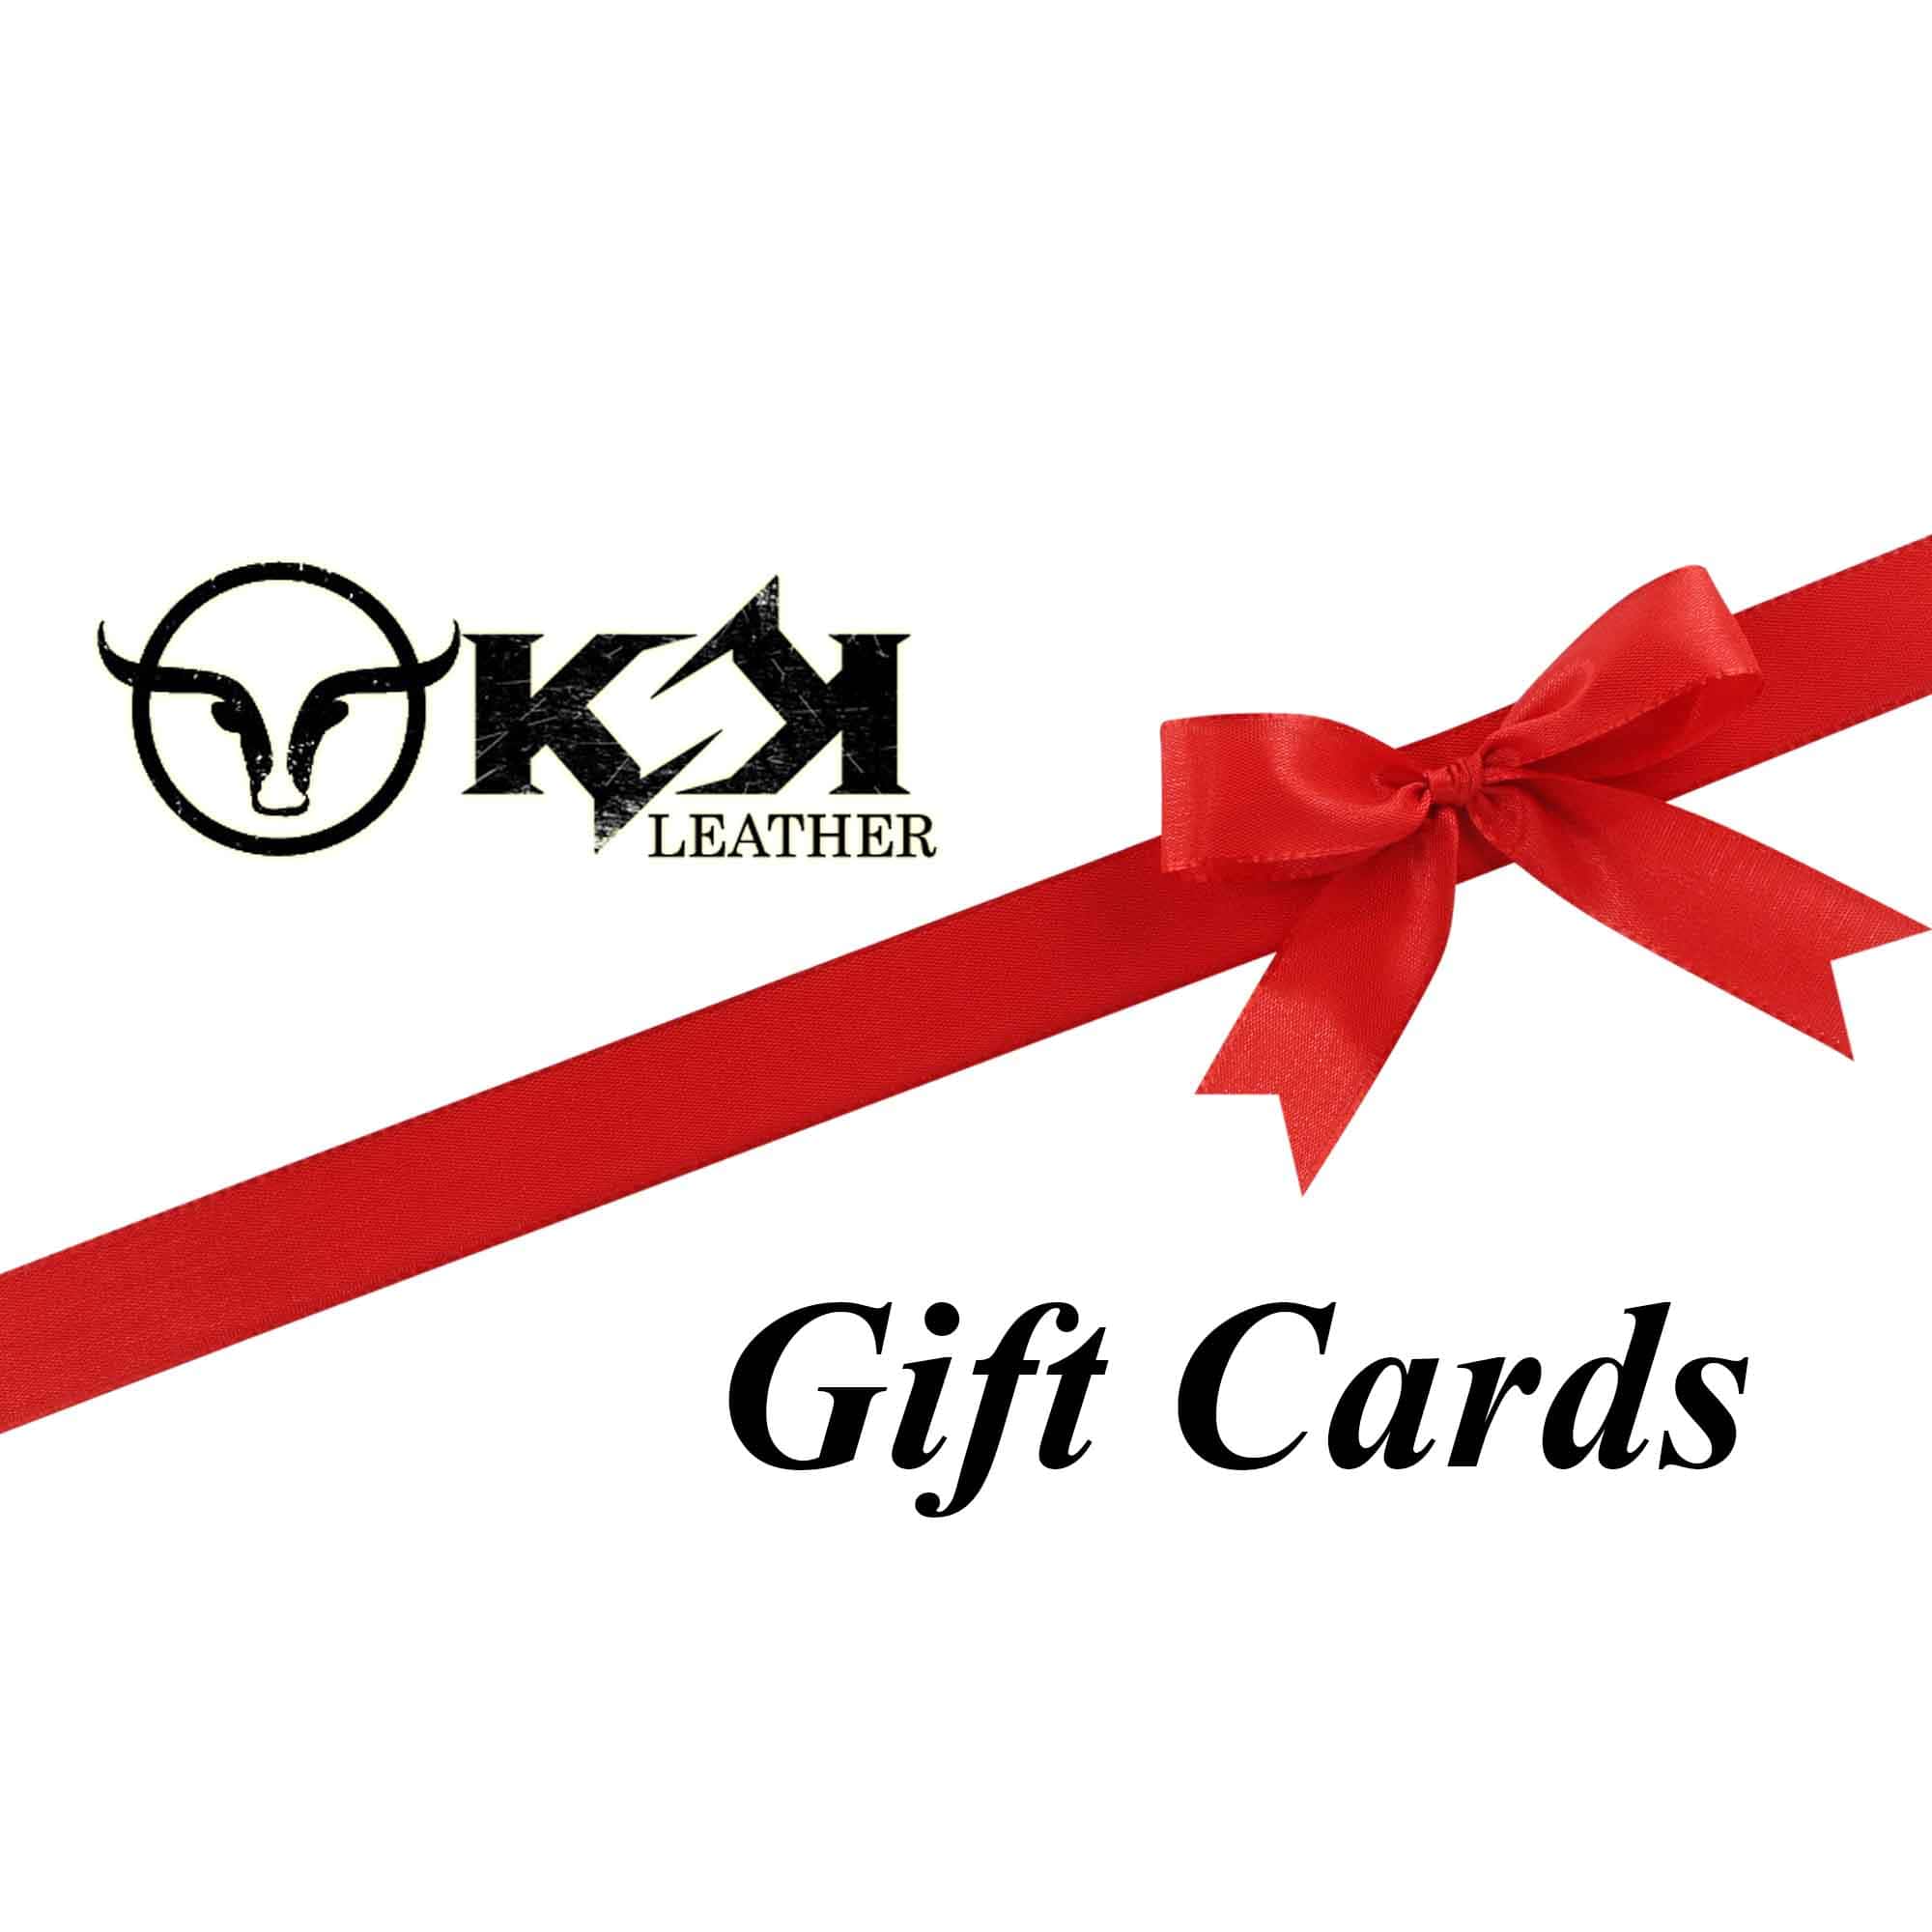 KSK Leather Gift Cards – KSK LEATHER